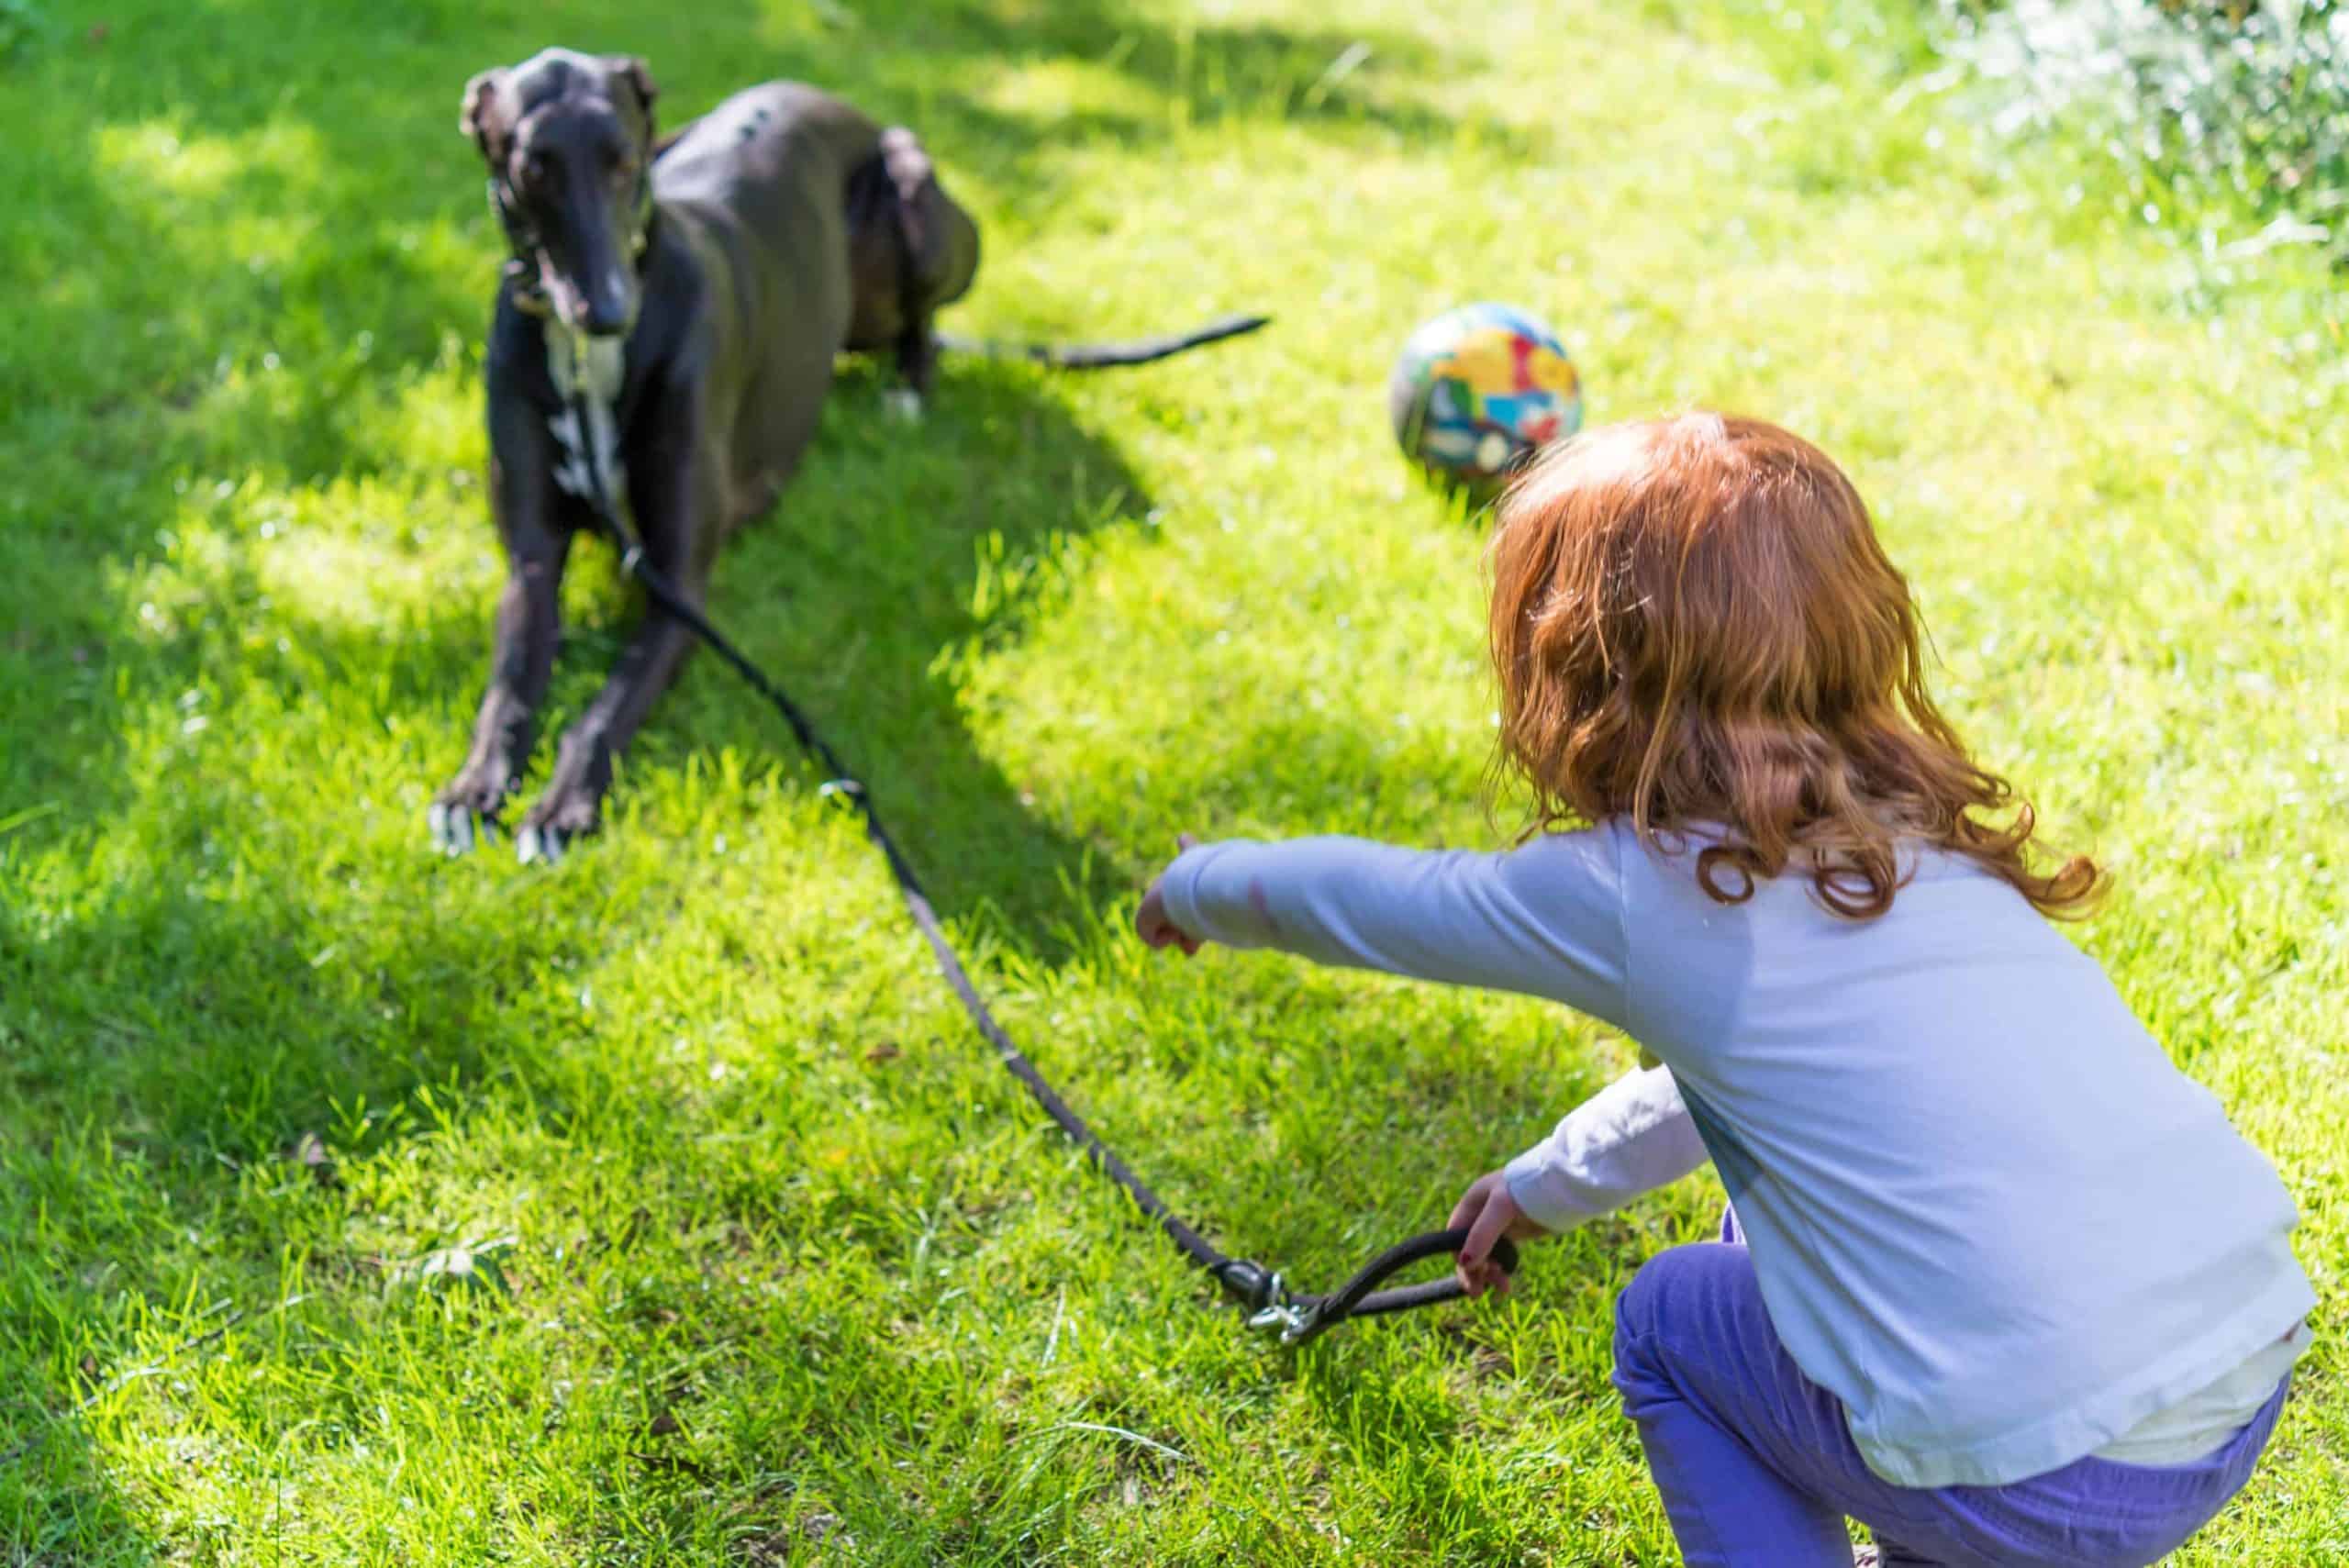 Girl trains greyhound to walk on a leash.